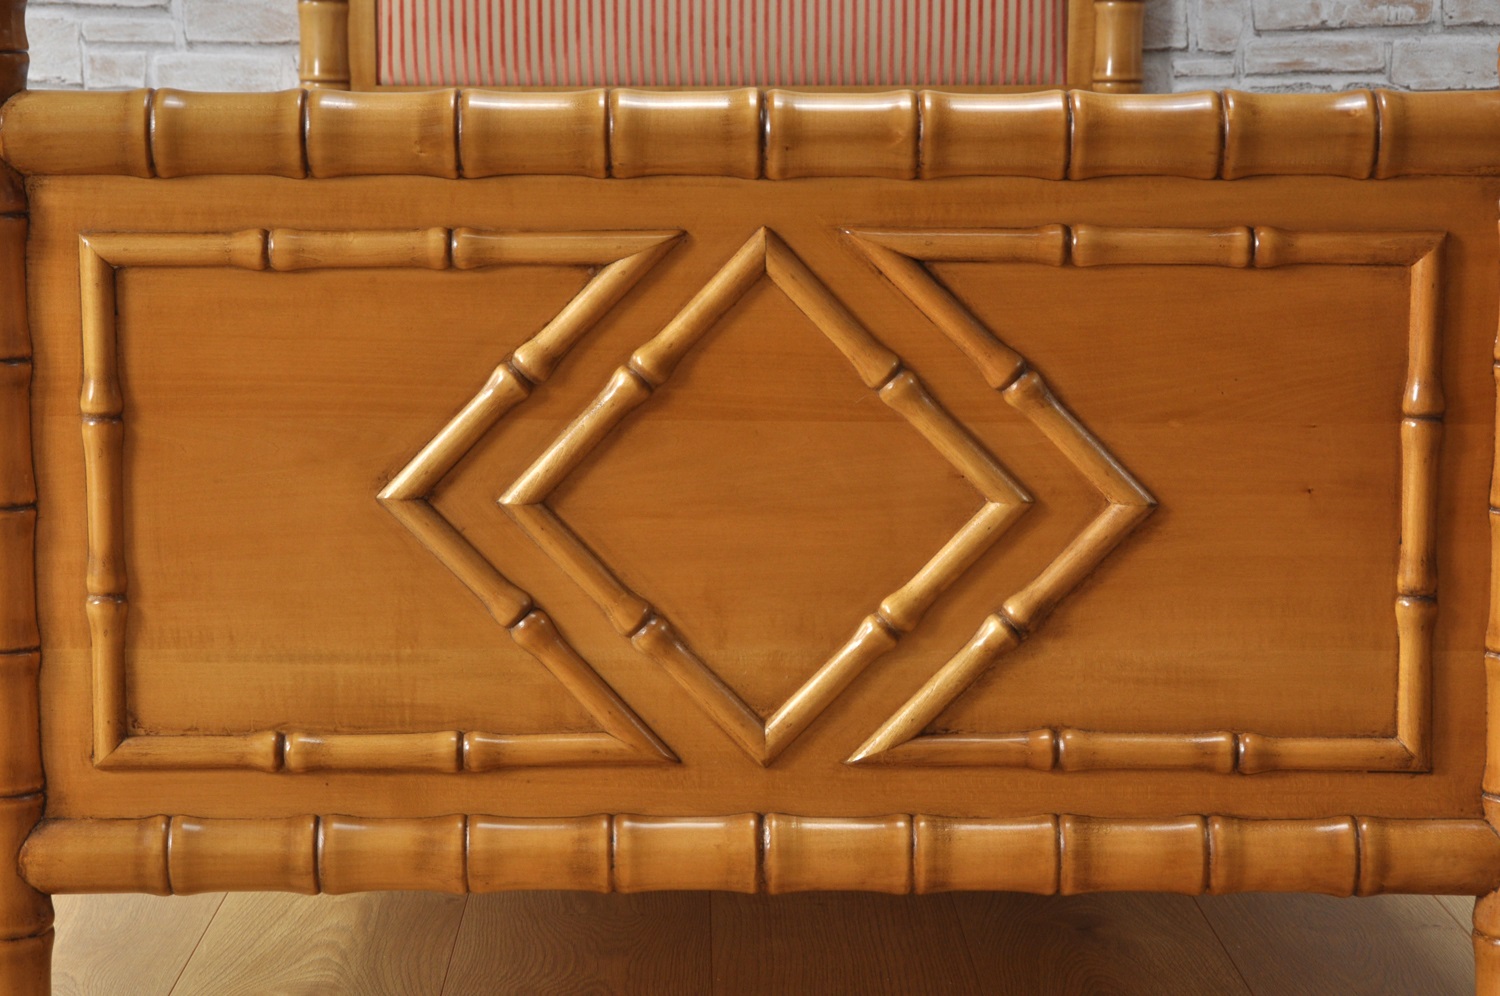 pediera del letto singolo realizzato come il manufatto originale in stile inglese coloniale bamboo arredo riprodotto su misura per prestigiose camere da letto di importanti residenze riproduzione del 1700